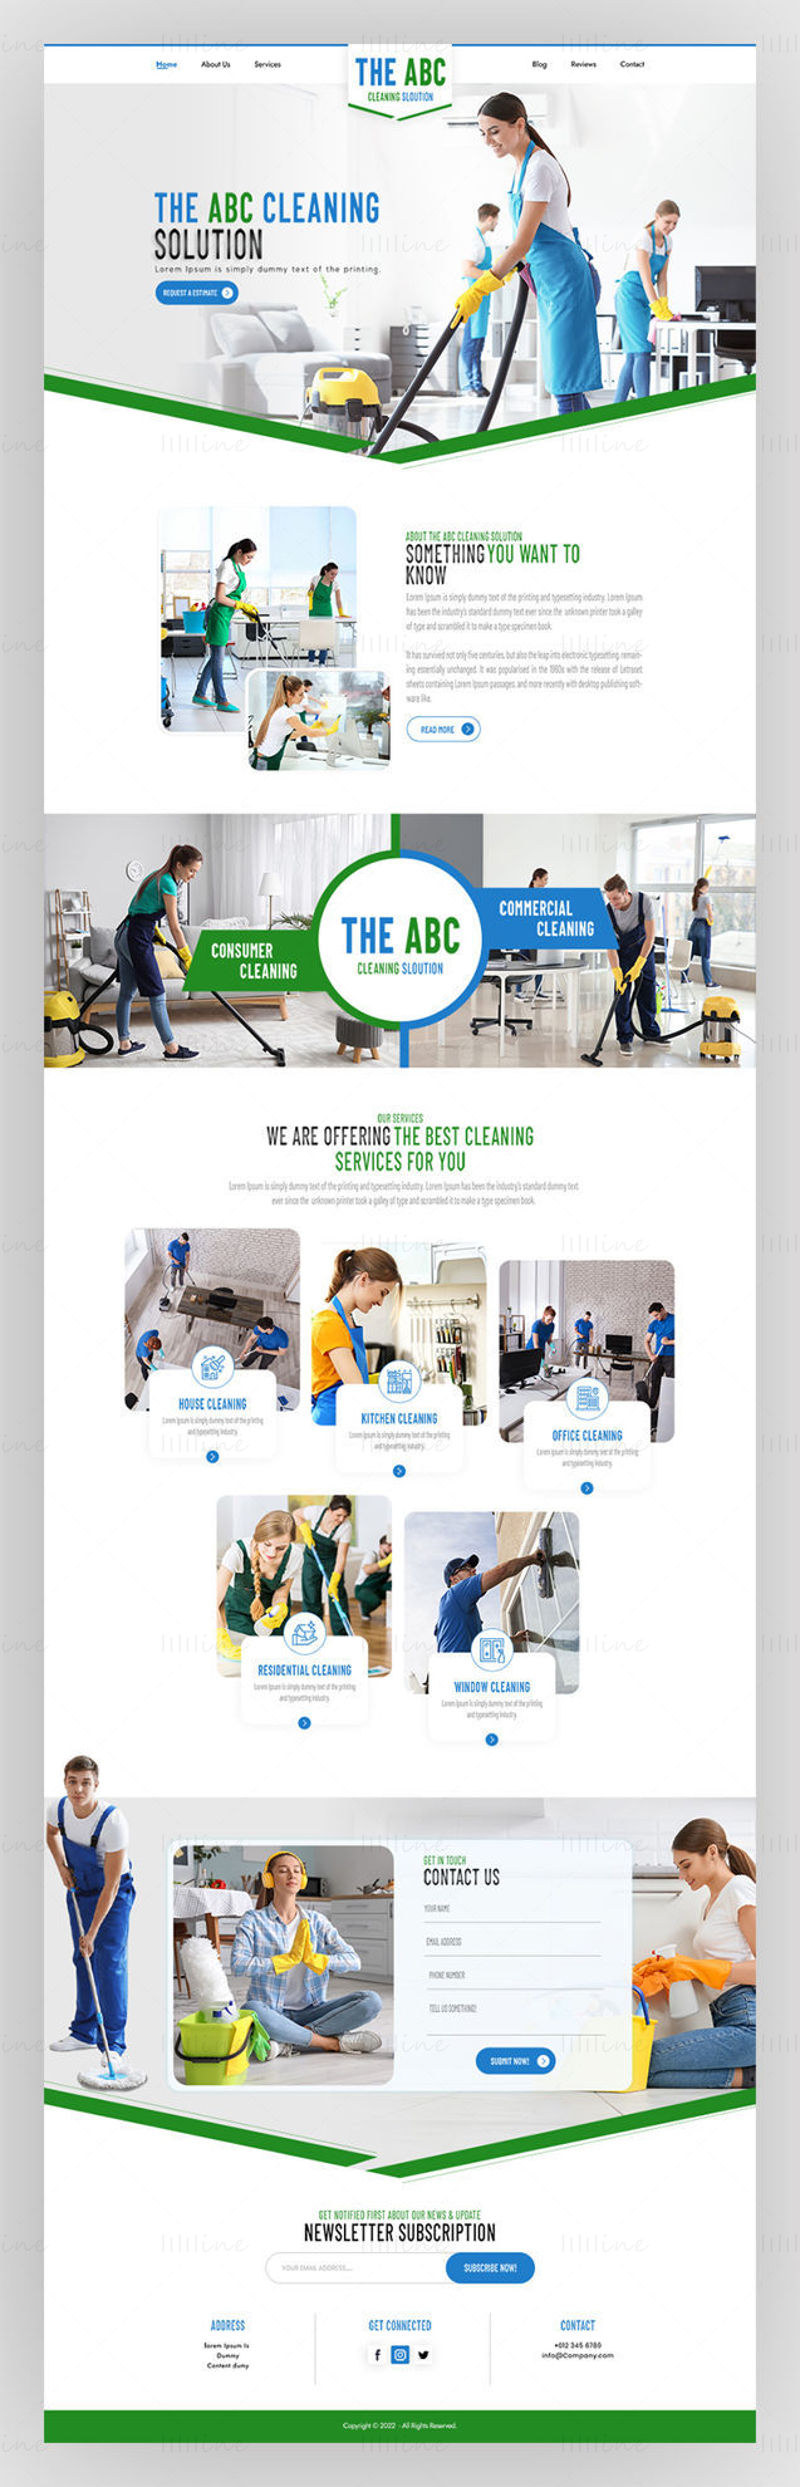 清洁服务公司网站着陆页模板 UI Adobe Photoshop